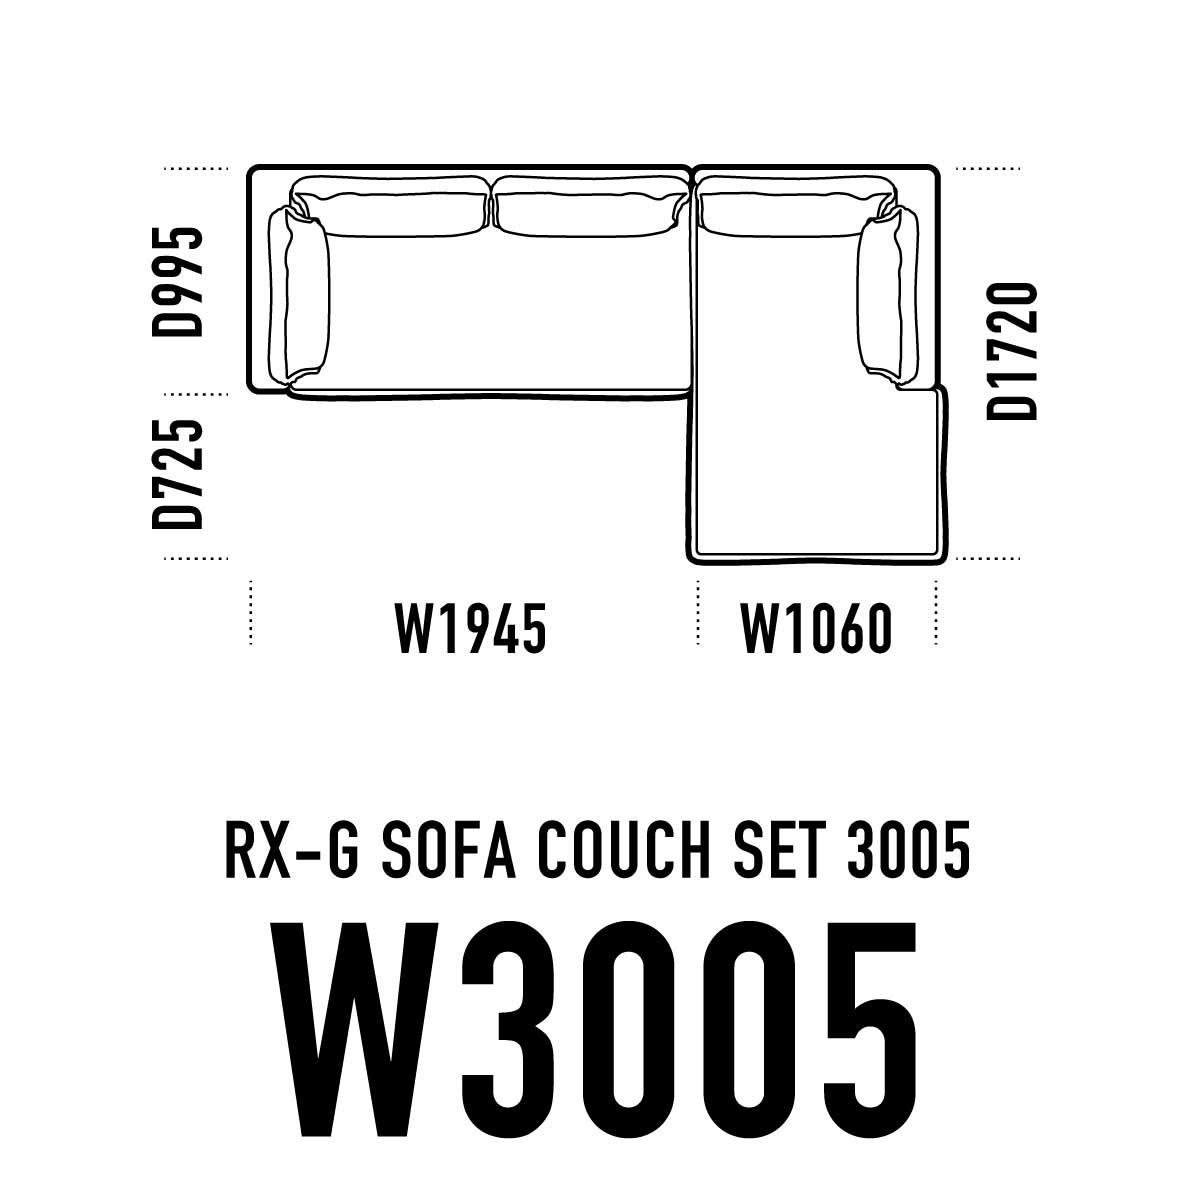 RX-Gカウチソファ W3005